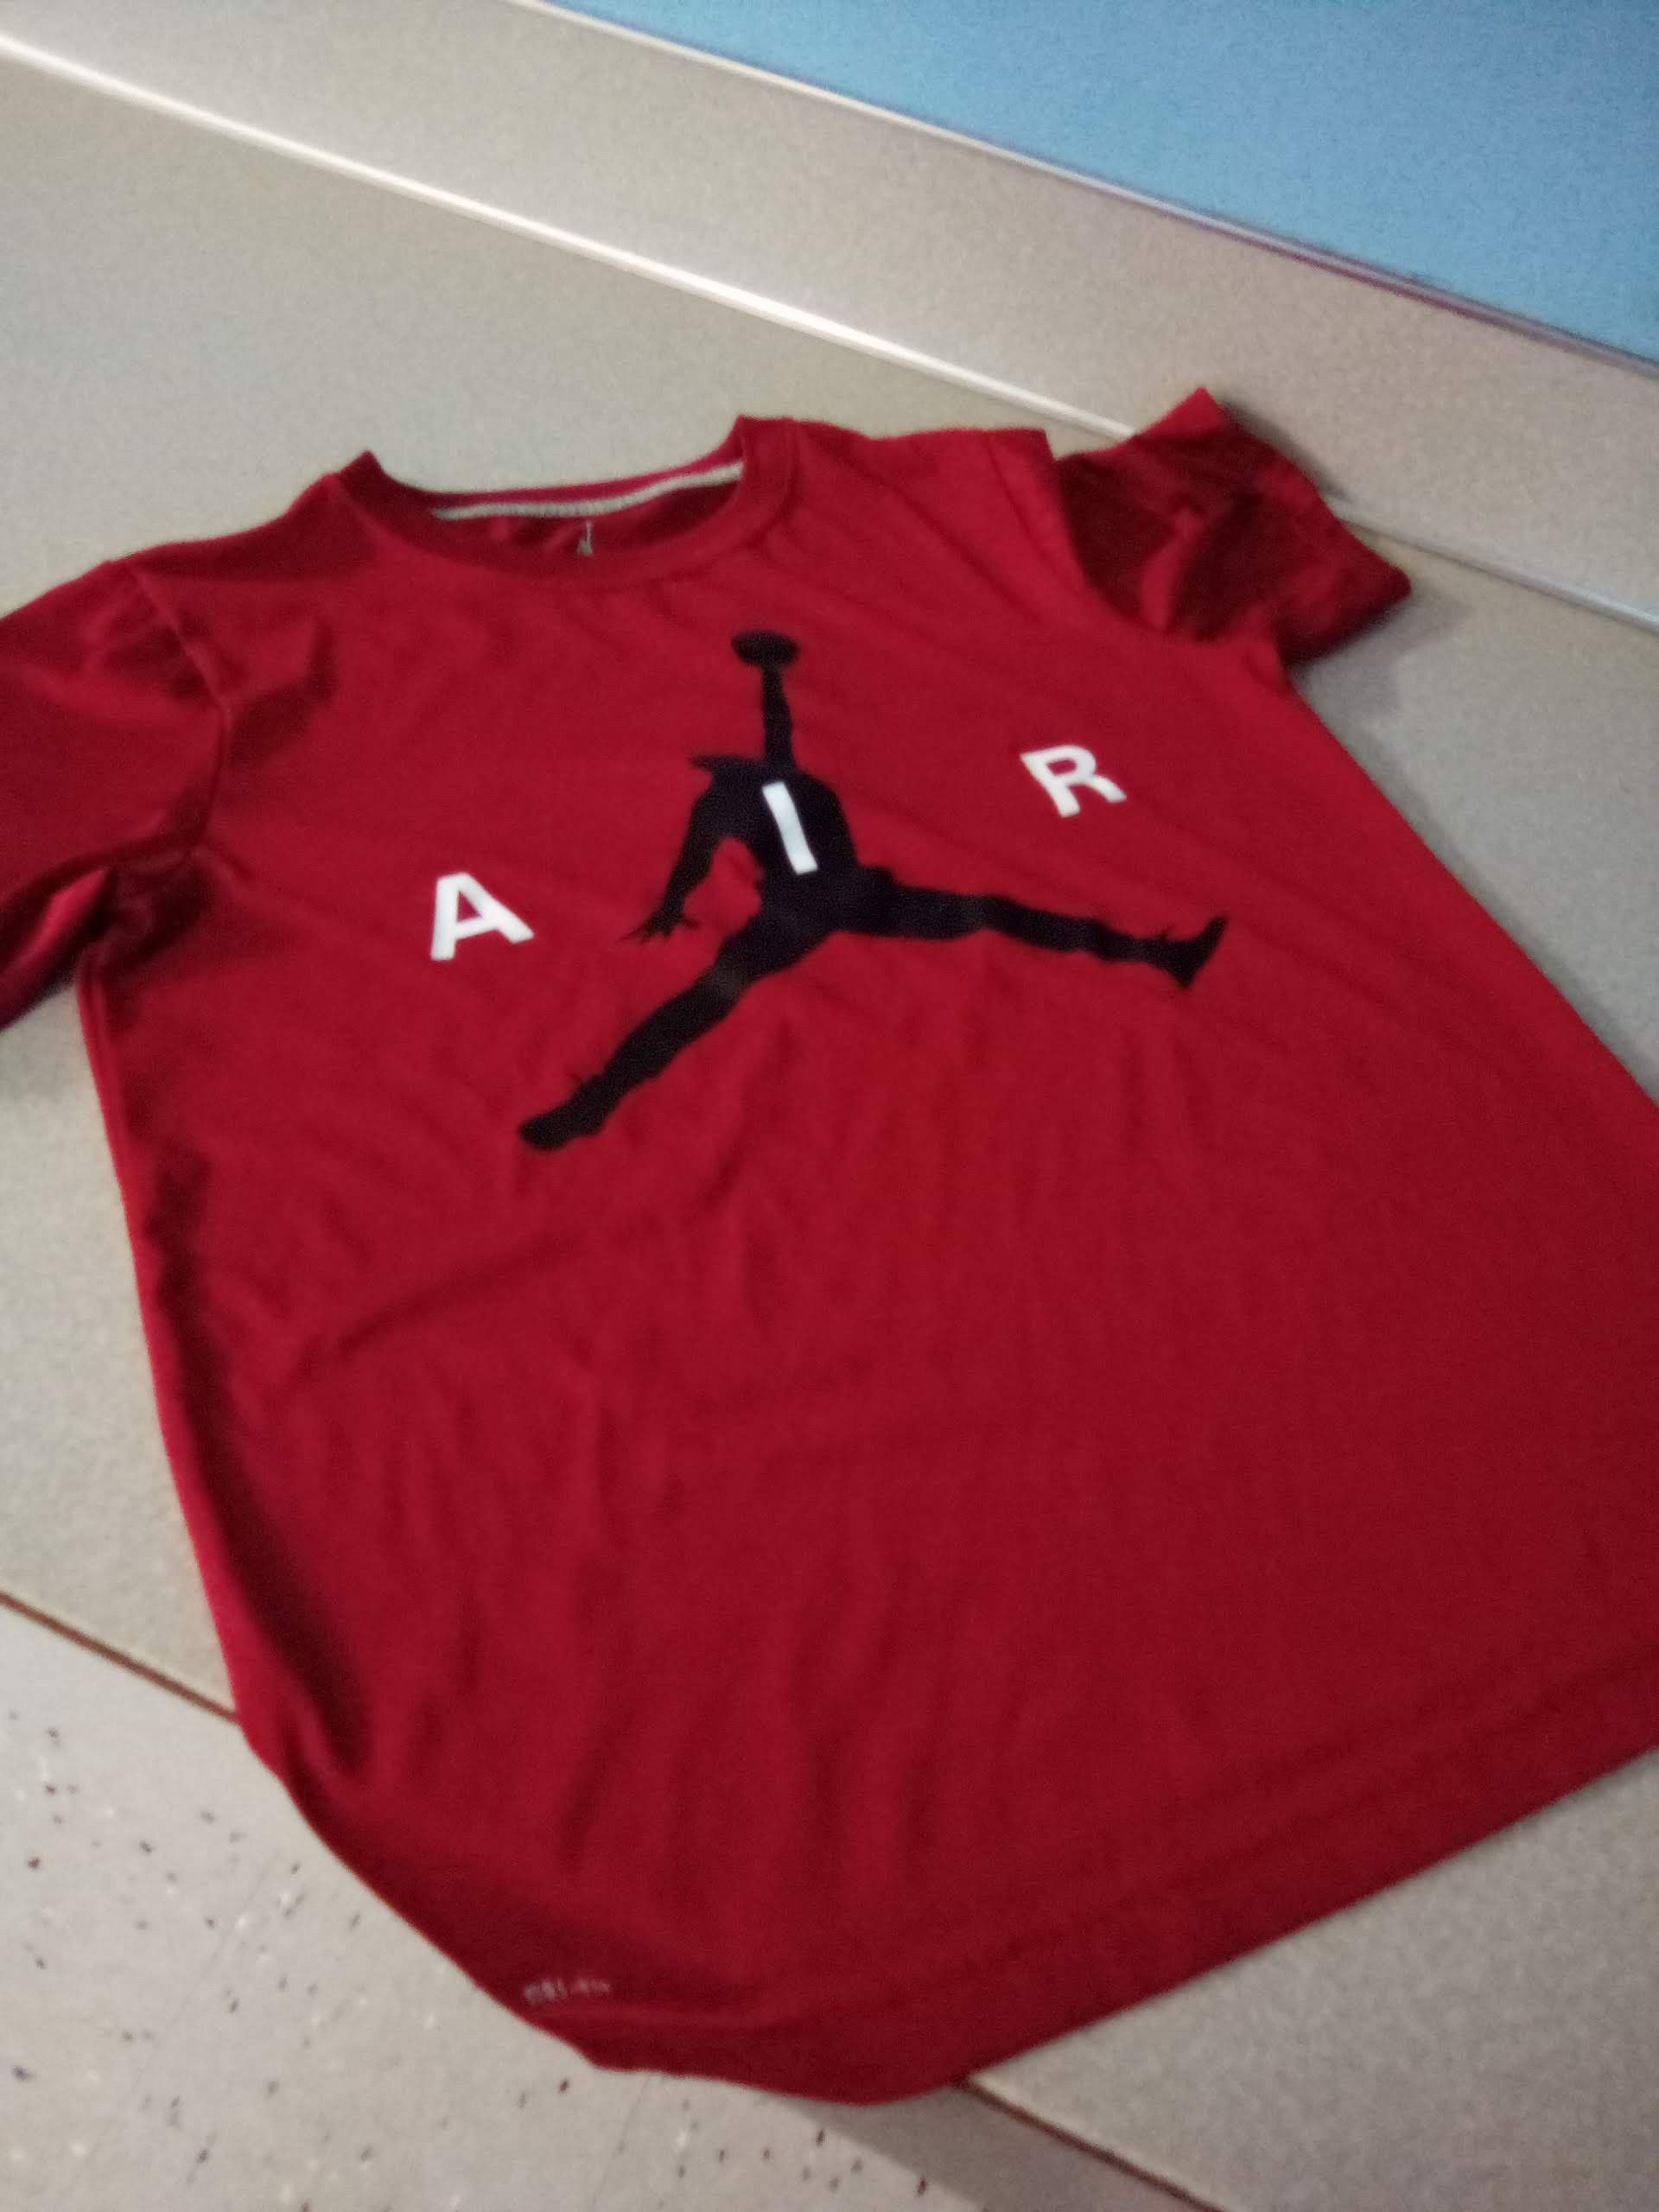 Air Jordan t-shirt